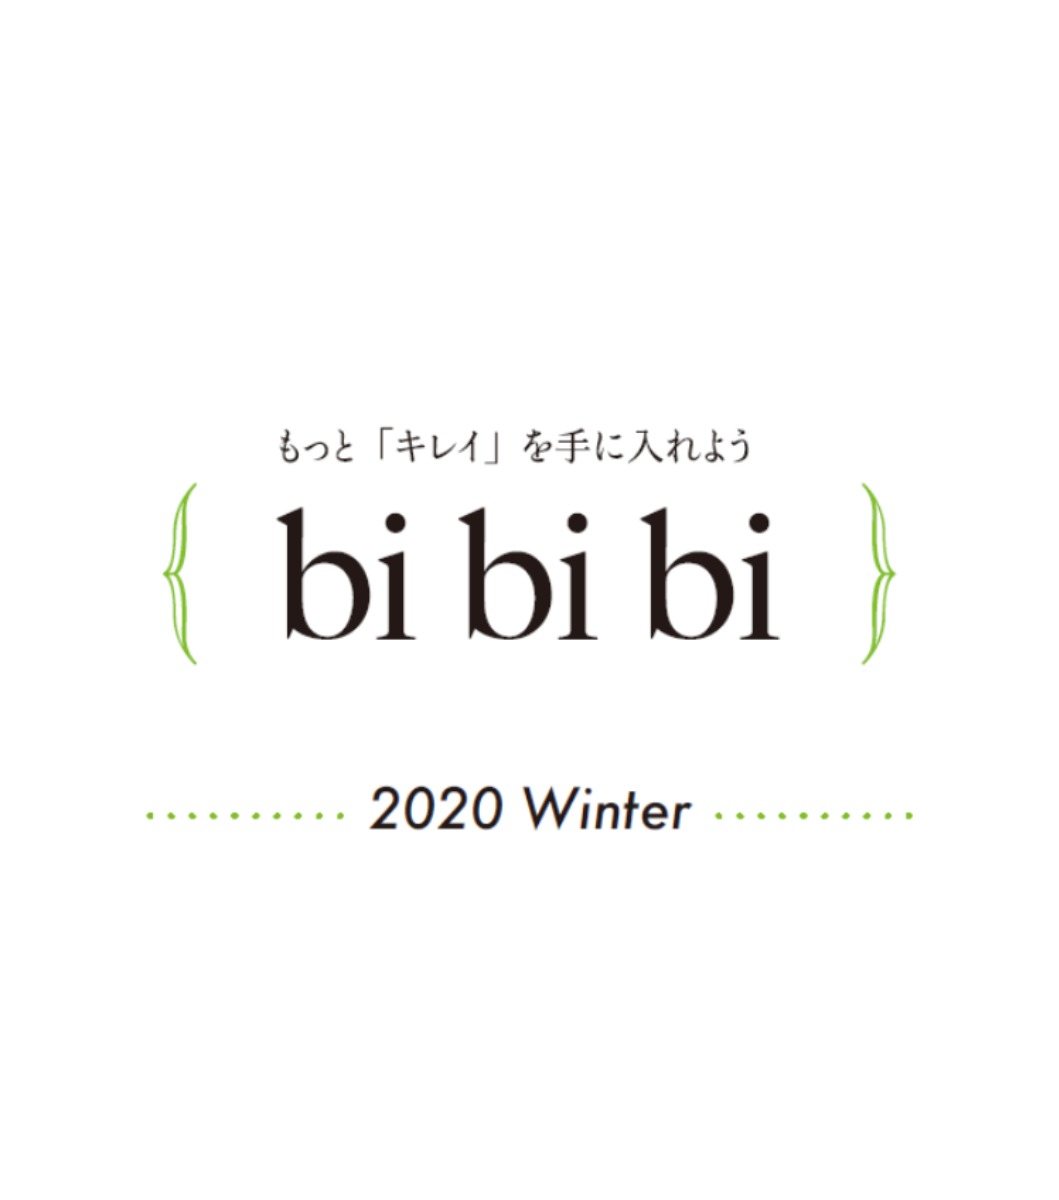 【美容まとめ】bibibi 2020 Winter【もっと「キレイ」を手に入れよう】